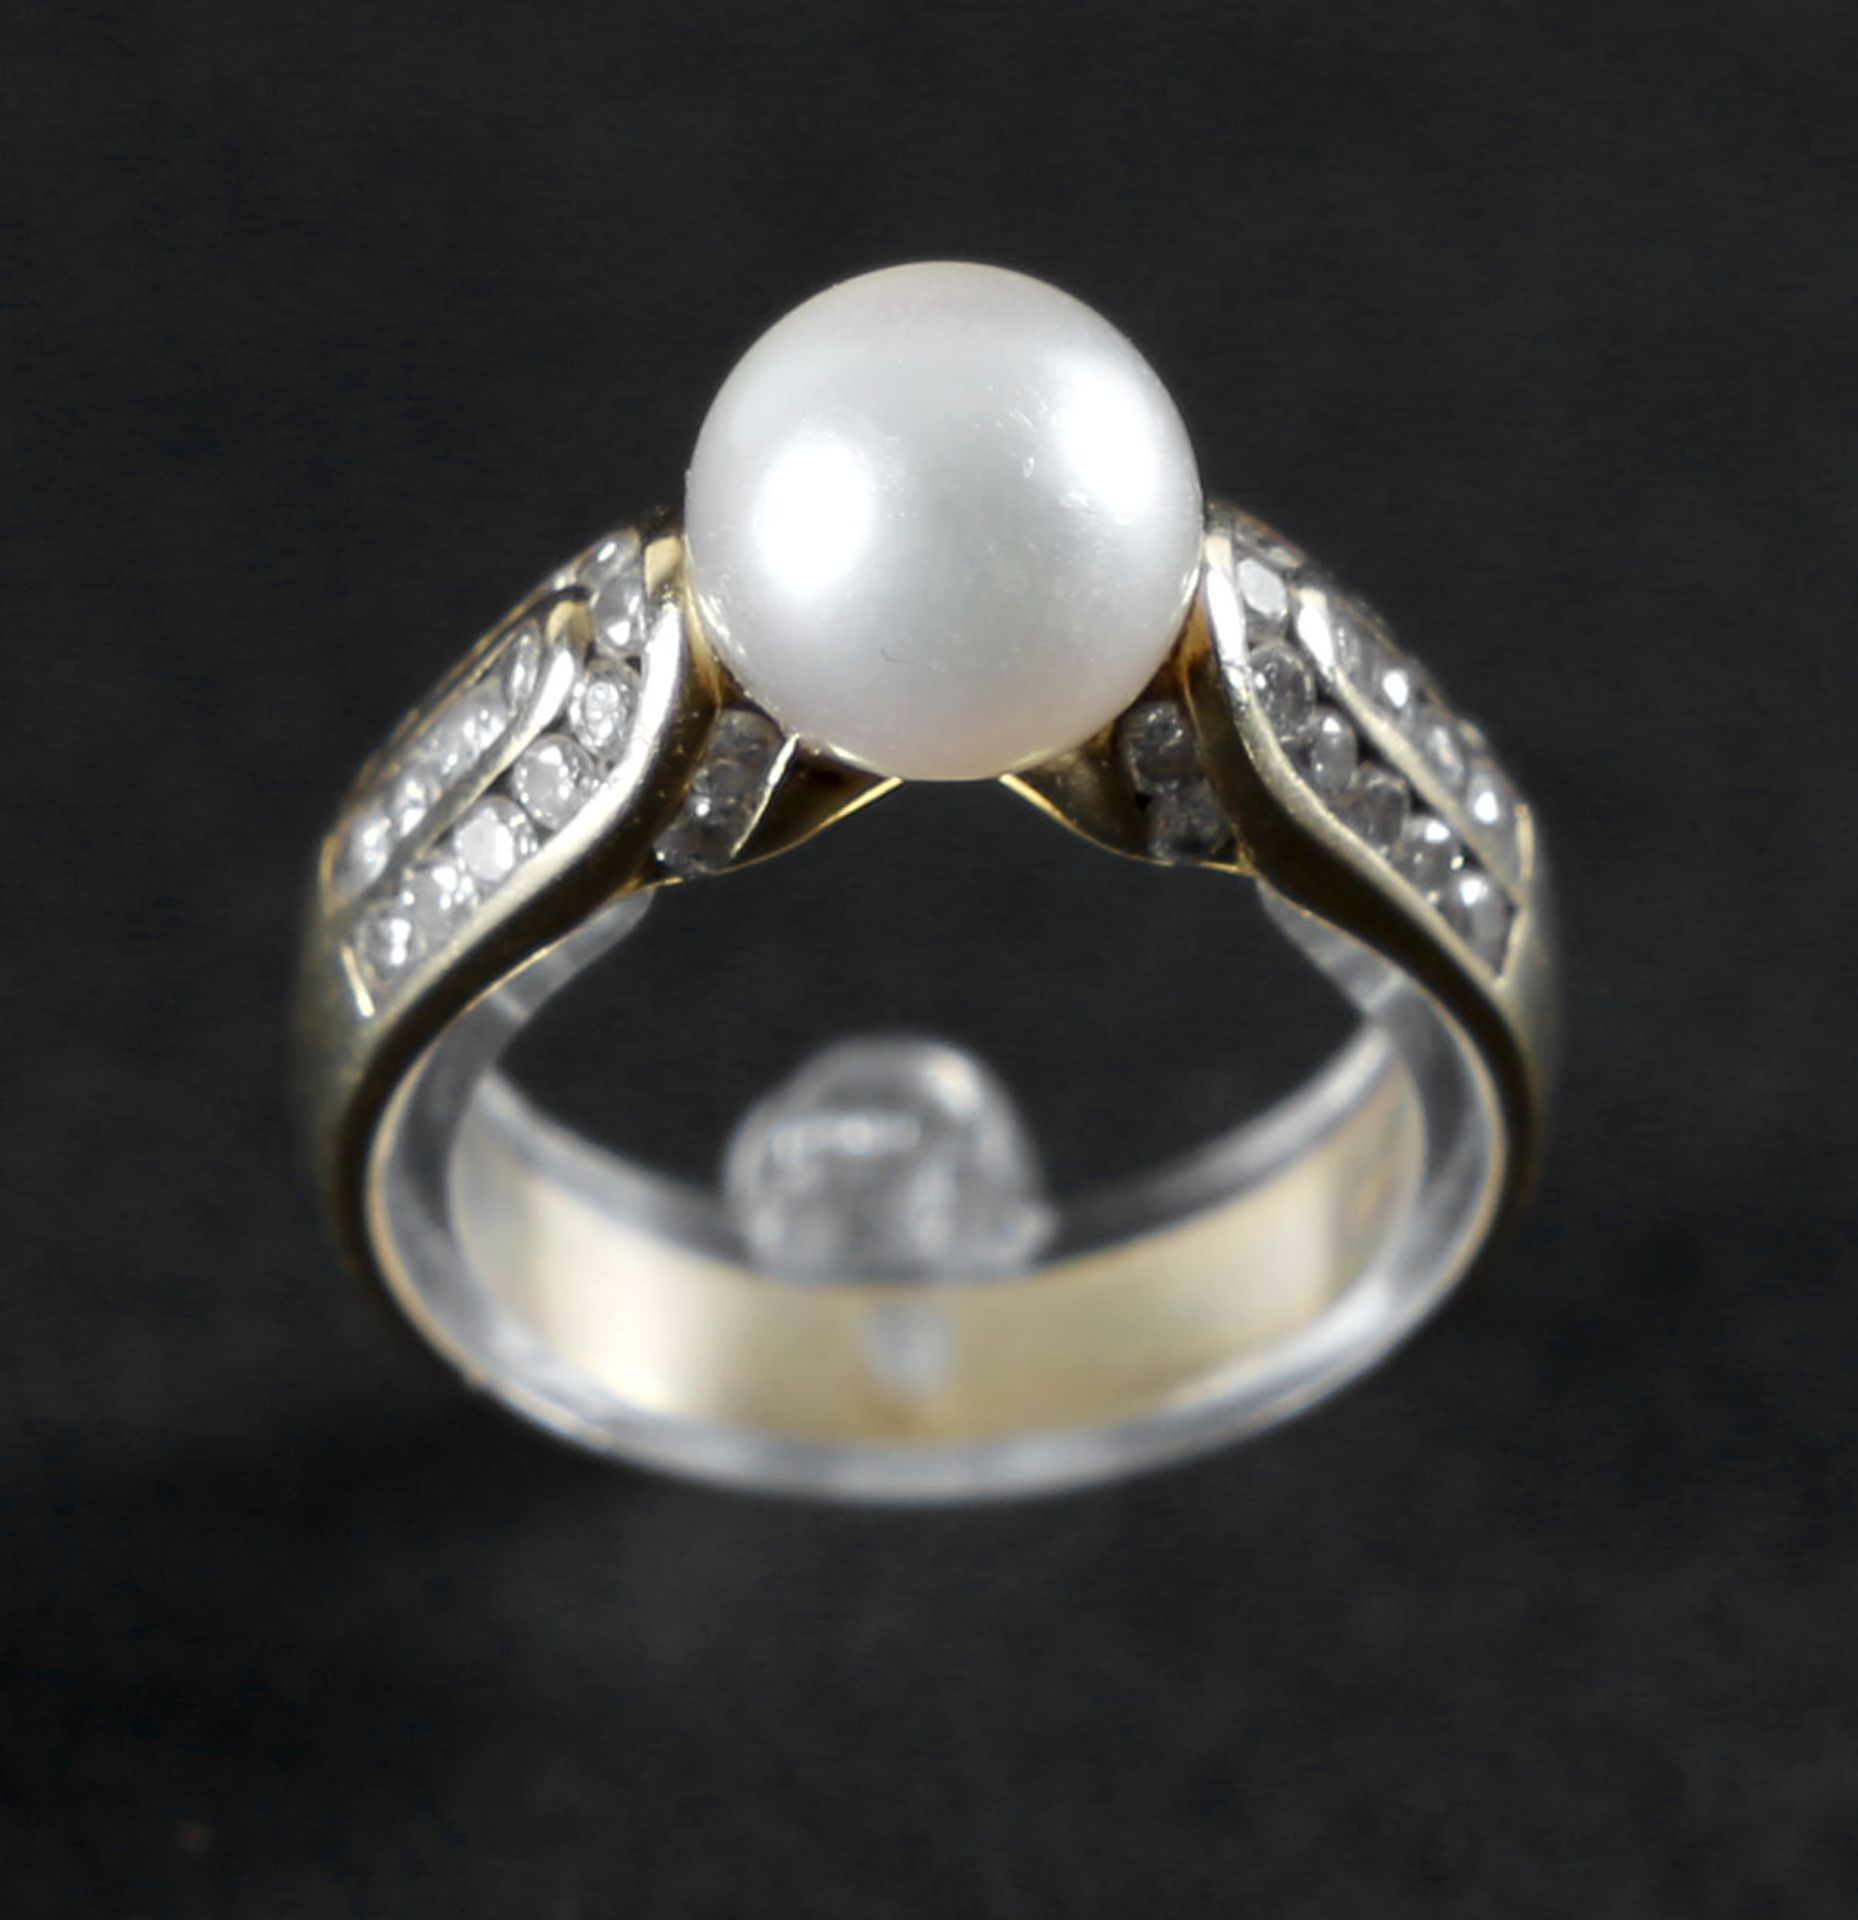 Schöner Ring mit Perle und Brillanten, 750er GG